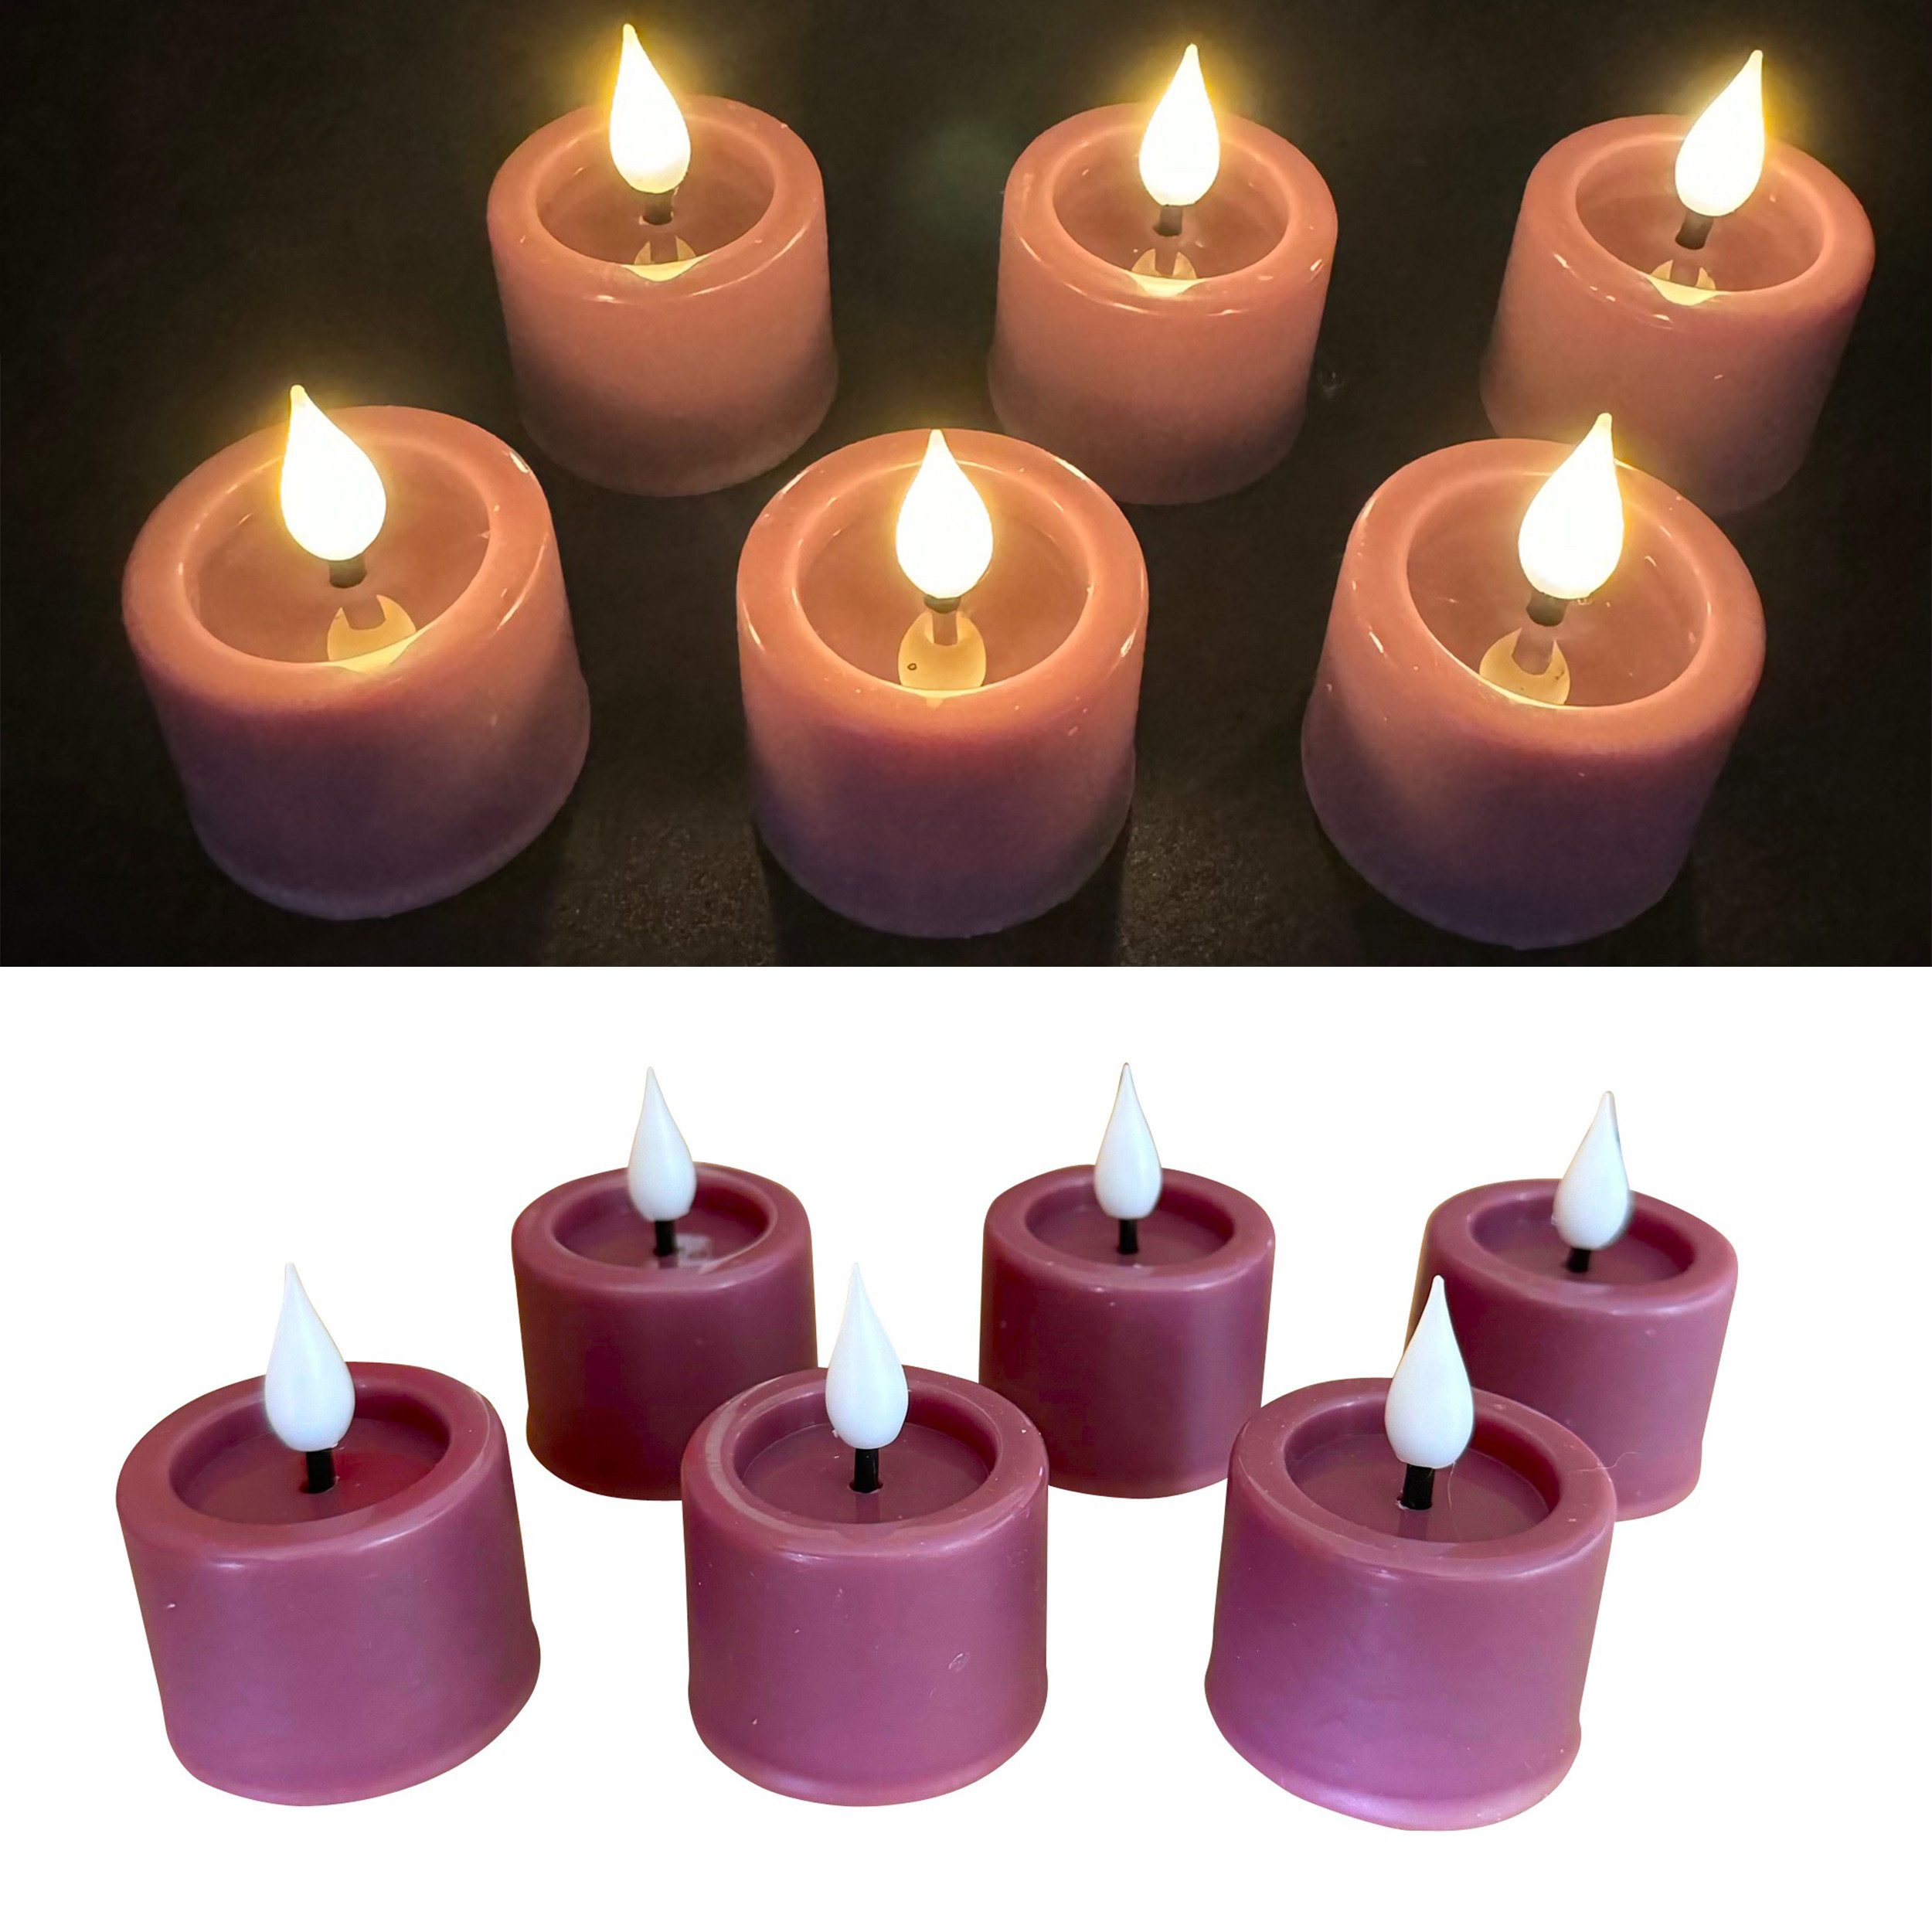 Online-Fuchs LED-Kerze als 6er Set Teelichter mit Flamme, Rauchlila (mit Echtwachs überzogen, spiegelnde Flamme), Maße: 4 x 3 cm, Fernbedienung, 6-Stunden-Timer